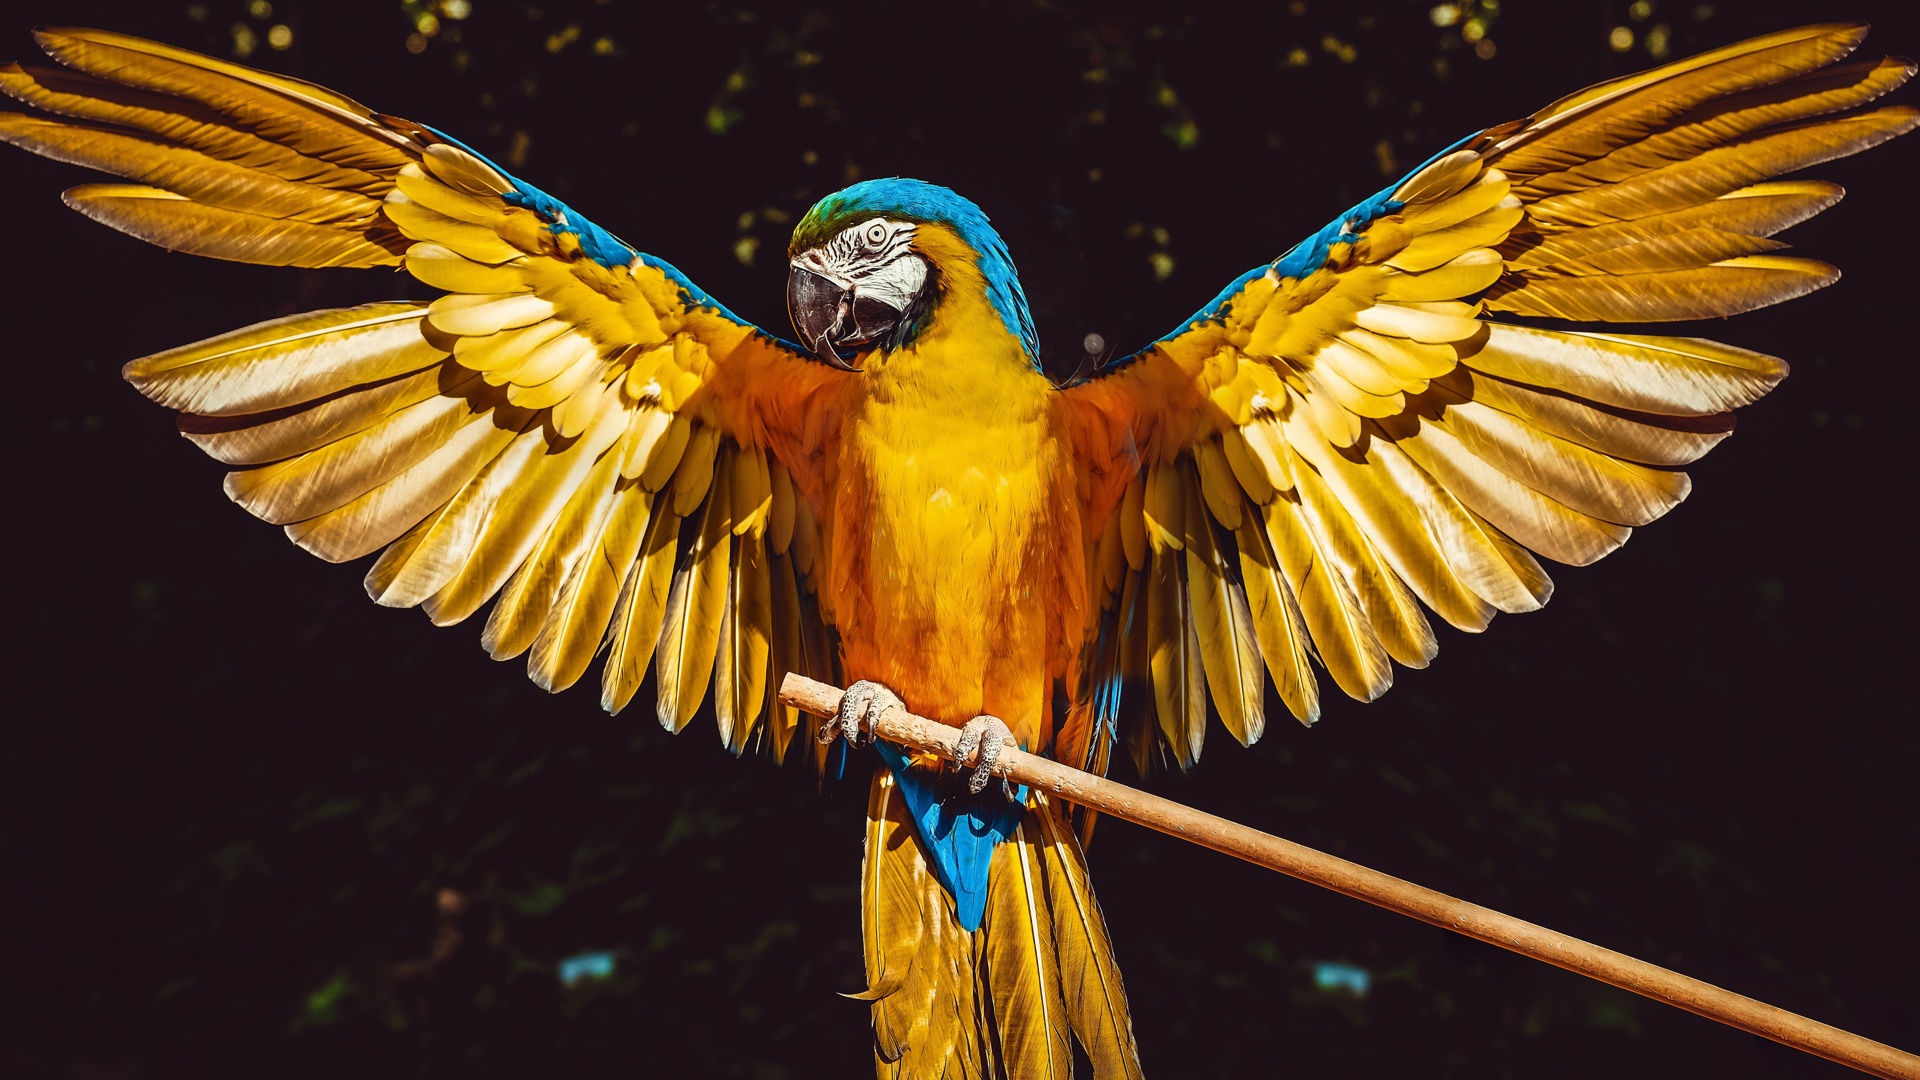 Hình nền chim vẹt sặc sỡ và đáng yêu nhất thế giới - [Kích thước hình ảnh: 1920x1080 px]